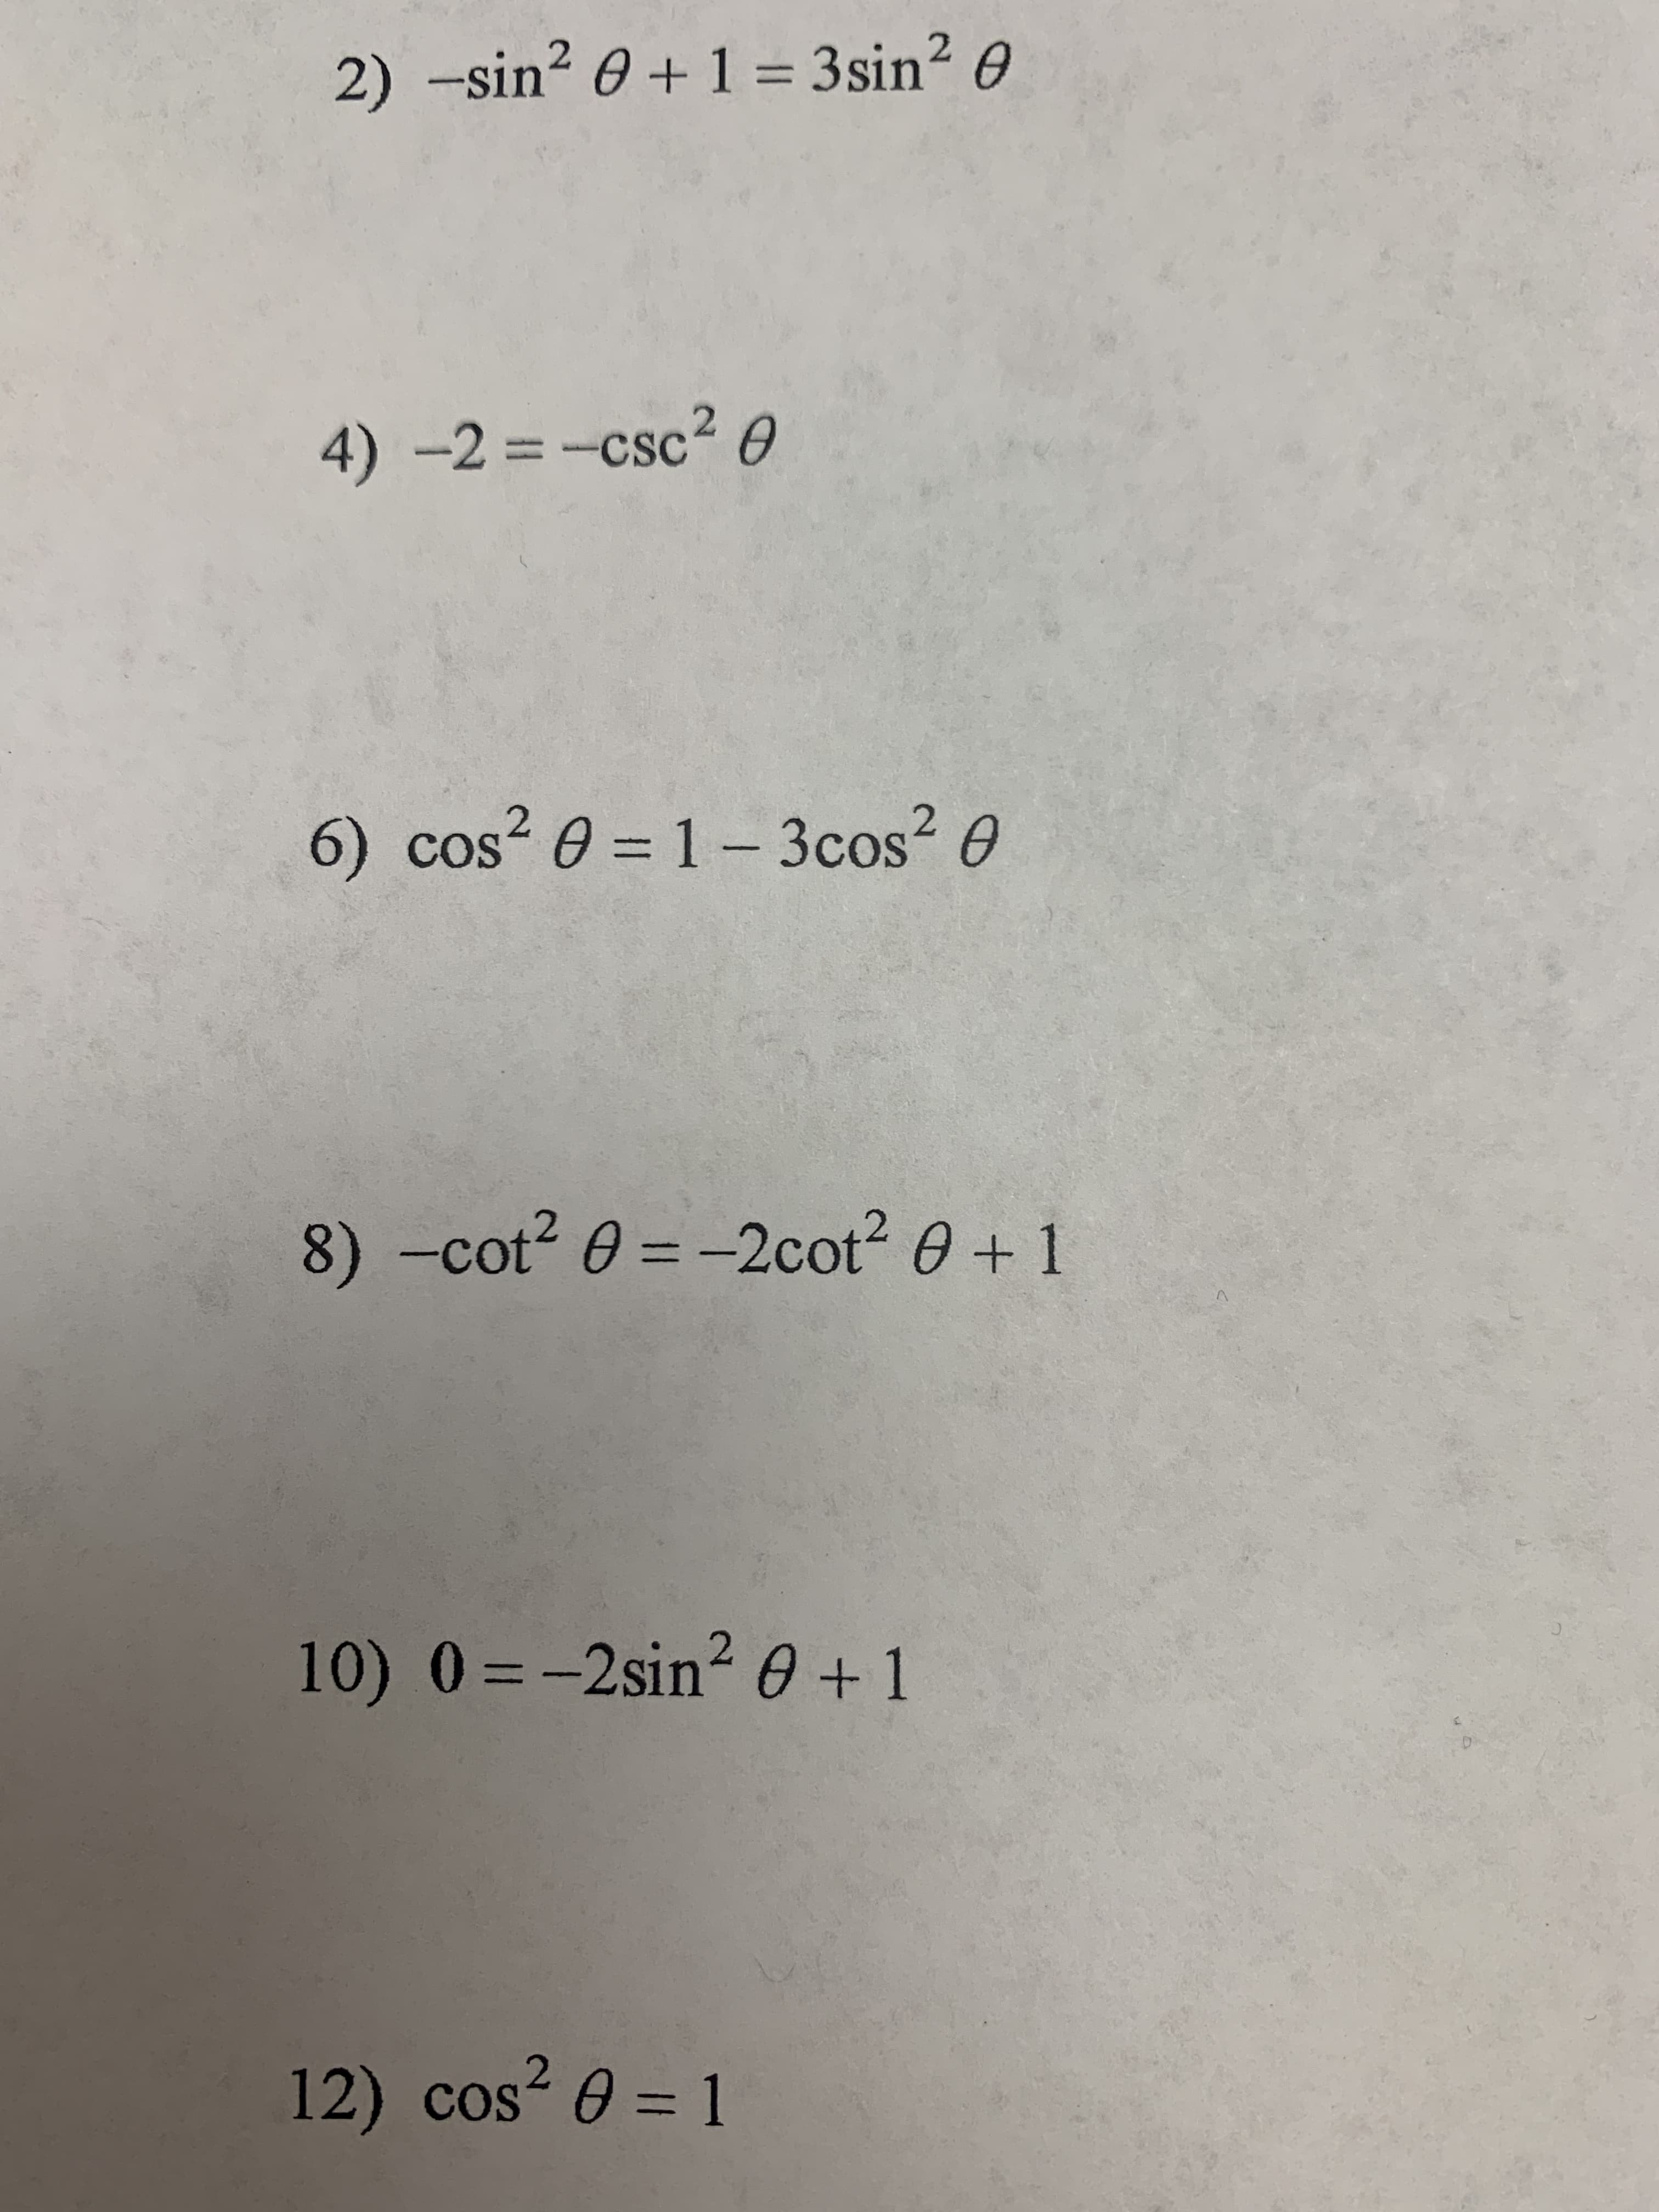 2) -sin? 0 + 1 = 3sin? 0
4)-2 =-csc2 0
CSC
%3D
6) cos? 0 = 1- 3cos? 0
8) -cot2 0 = -2cot2 0 + 1
10) 0=-2sin2 0 +1
%3D
12) cos² 0 = 1
